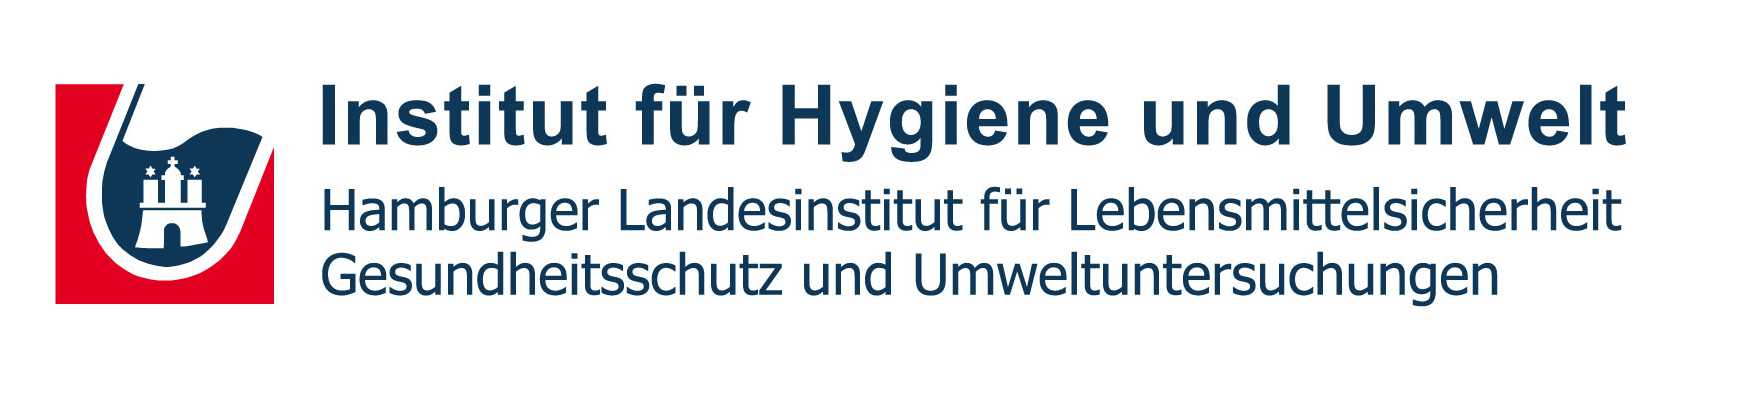 Institut für Hygiene und Umwelt Hamburg